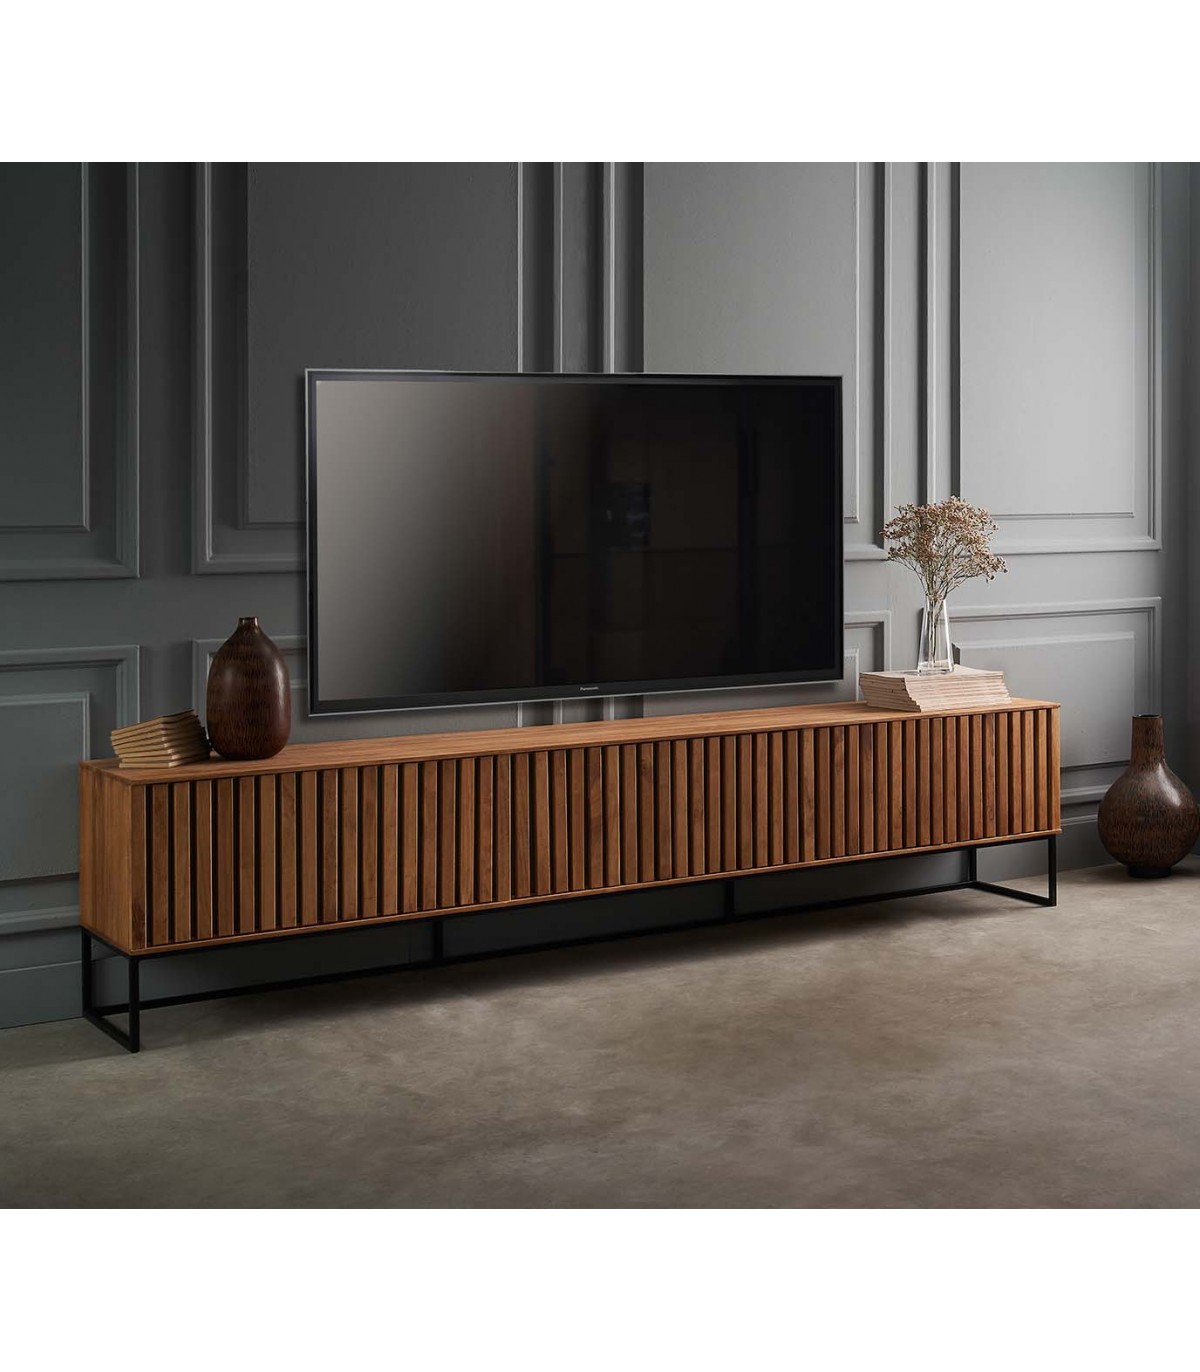 Mueble TV bajo para salón de diseño en madera sostenible